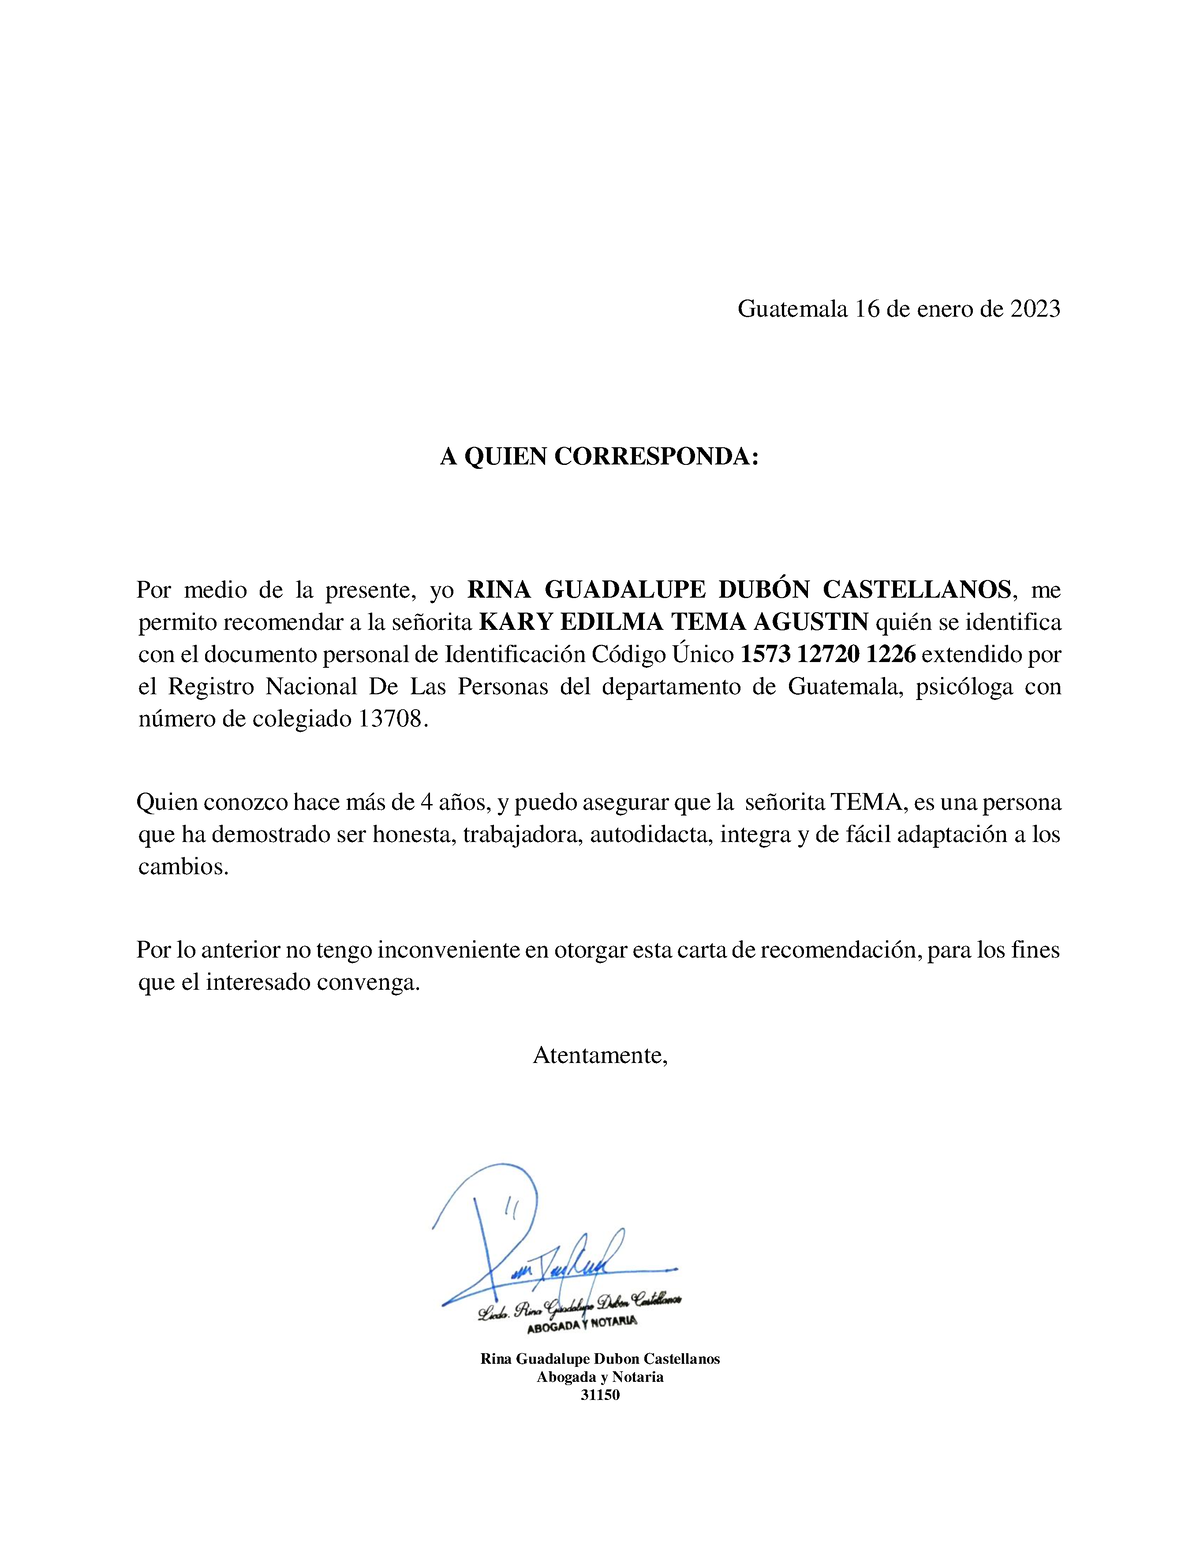 Carta De Recomendacion Guatemala 16 De Enero De 2023 A Quien Corresponda Por Medio De La 0567